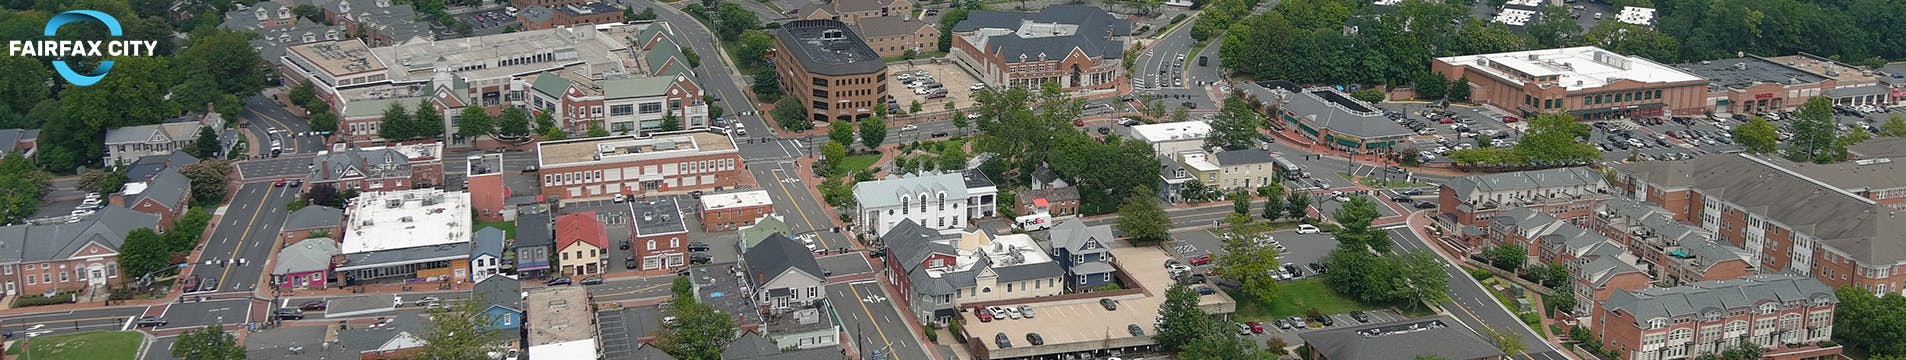 Old Town Fairfax aerial